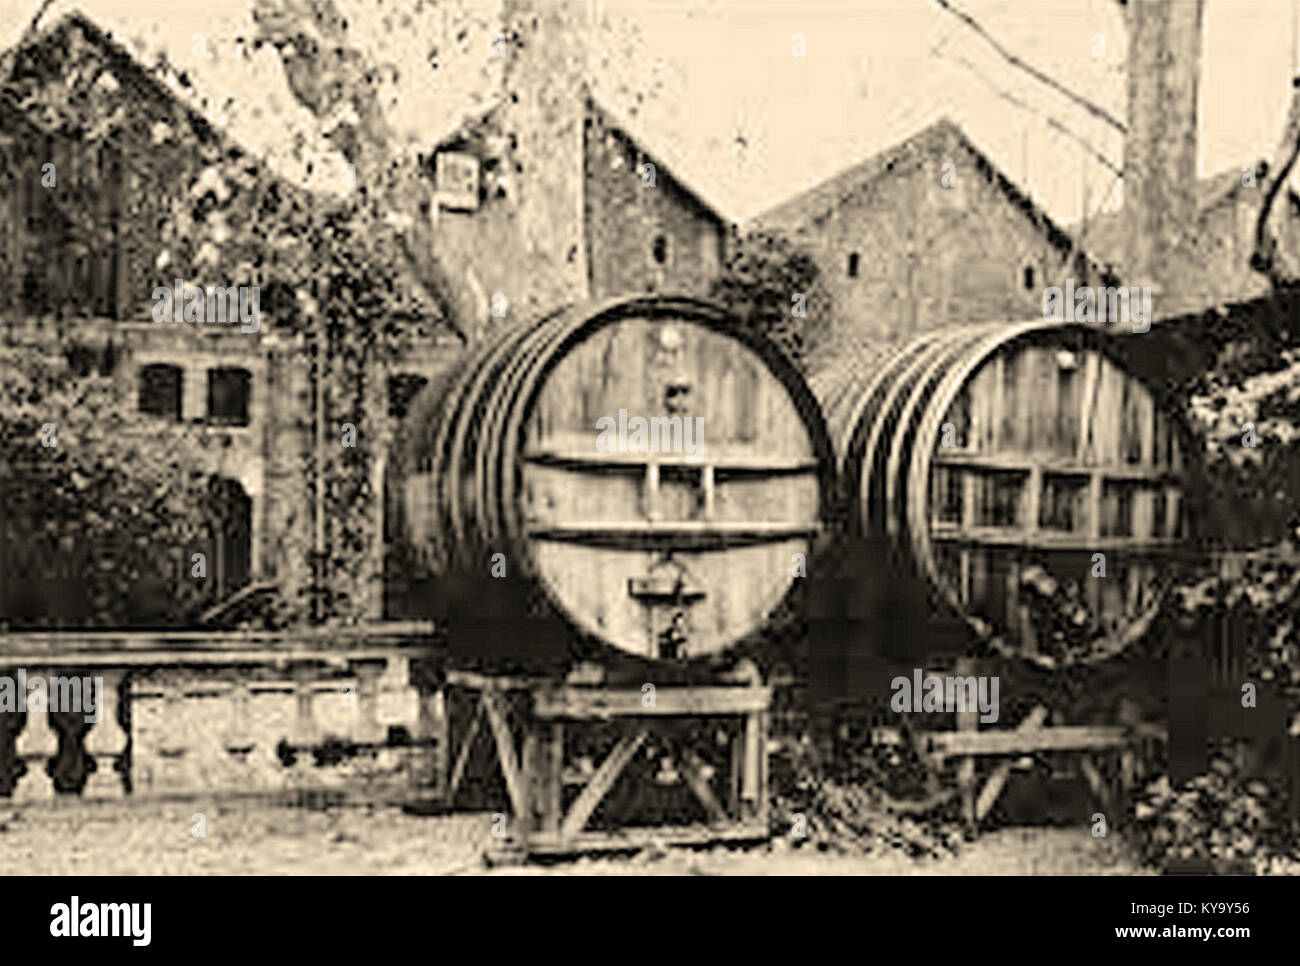 Pavillons de Bercy, ancien quartier de négoce de vin Foto Stock